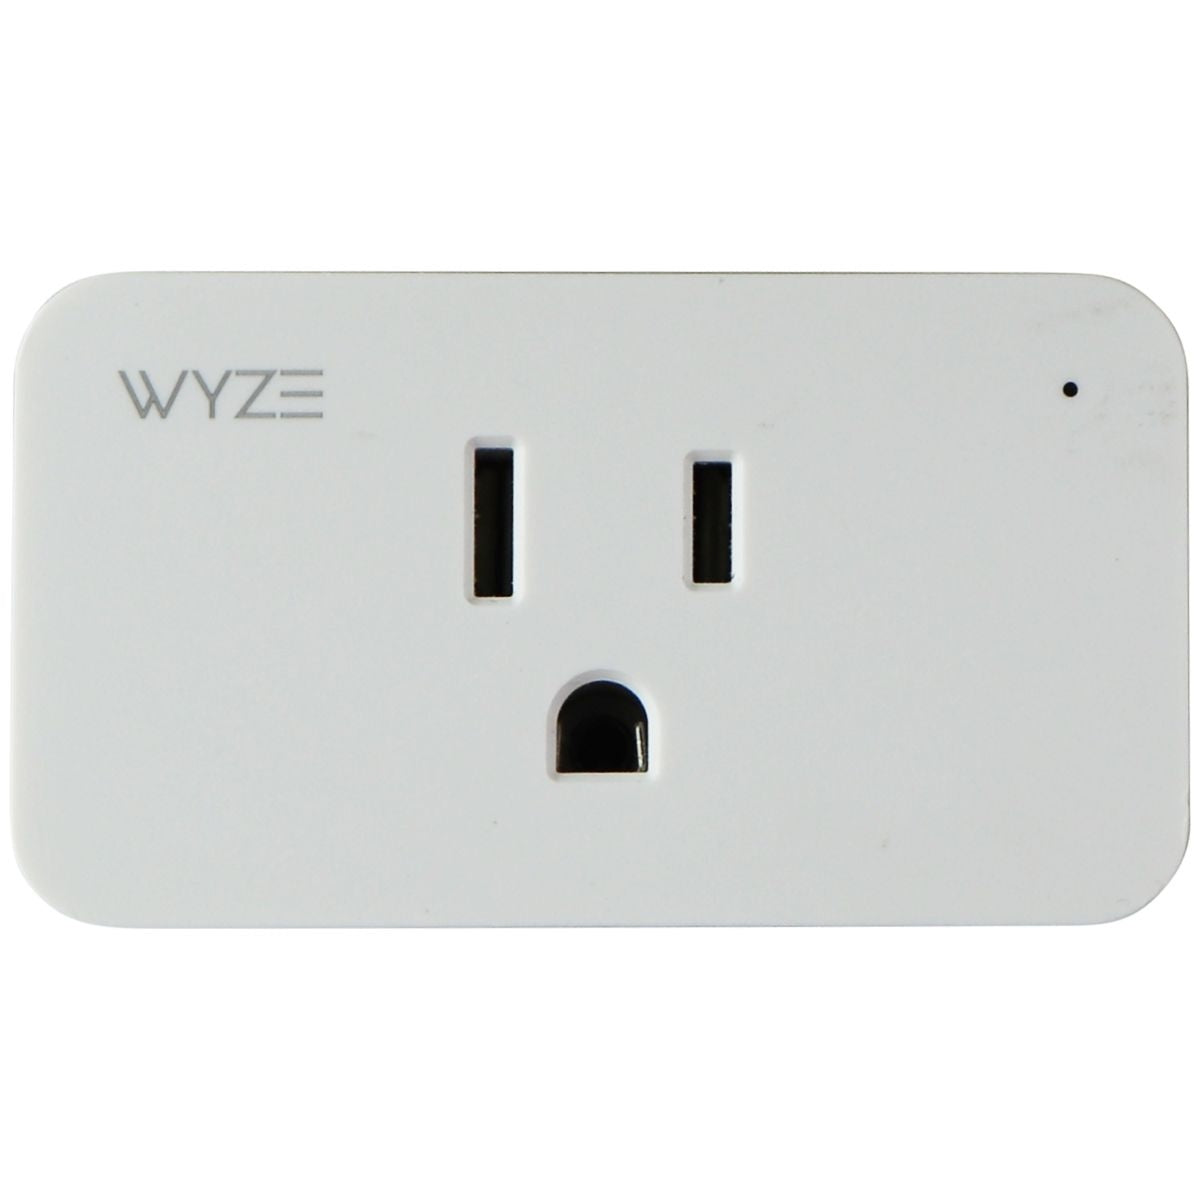 Wyze Plug 2.4GHz WiFi Smart Plug - Works with Alexa / Google